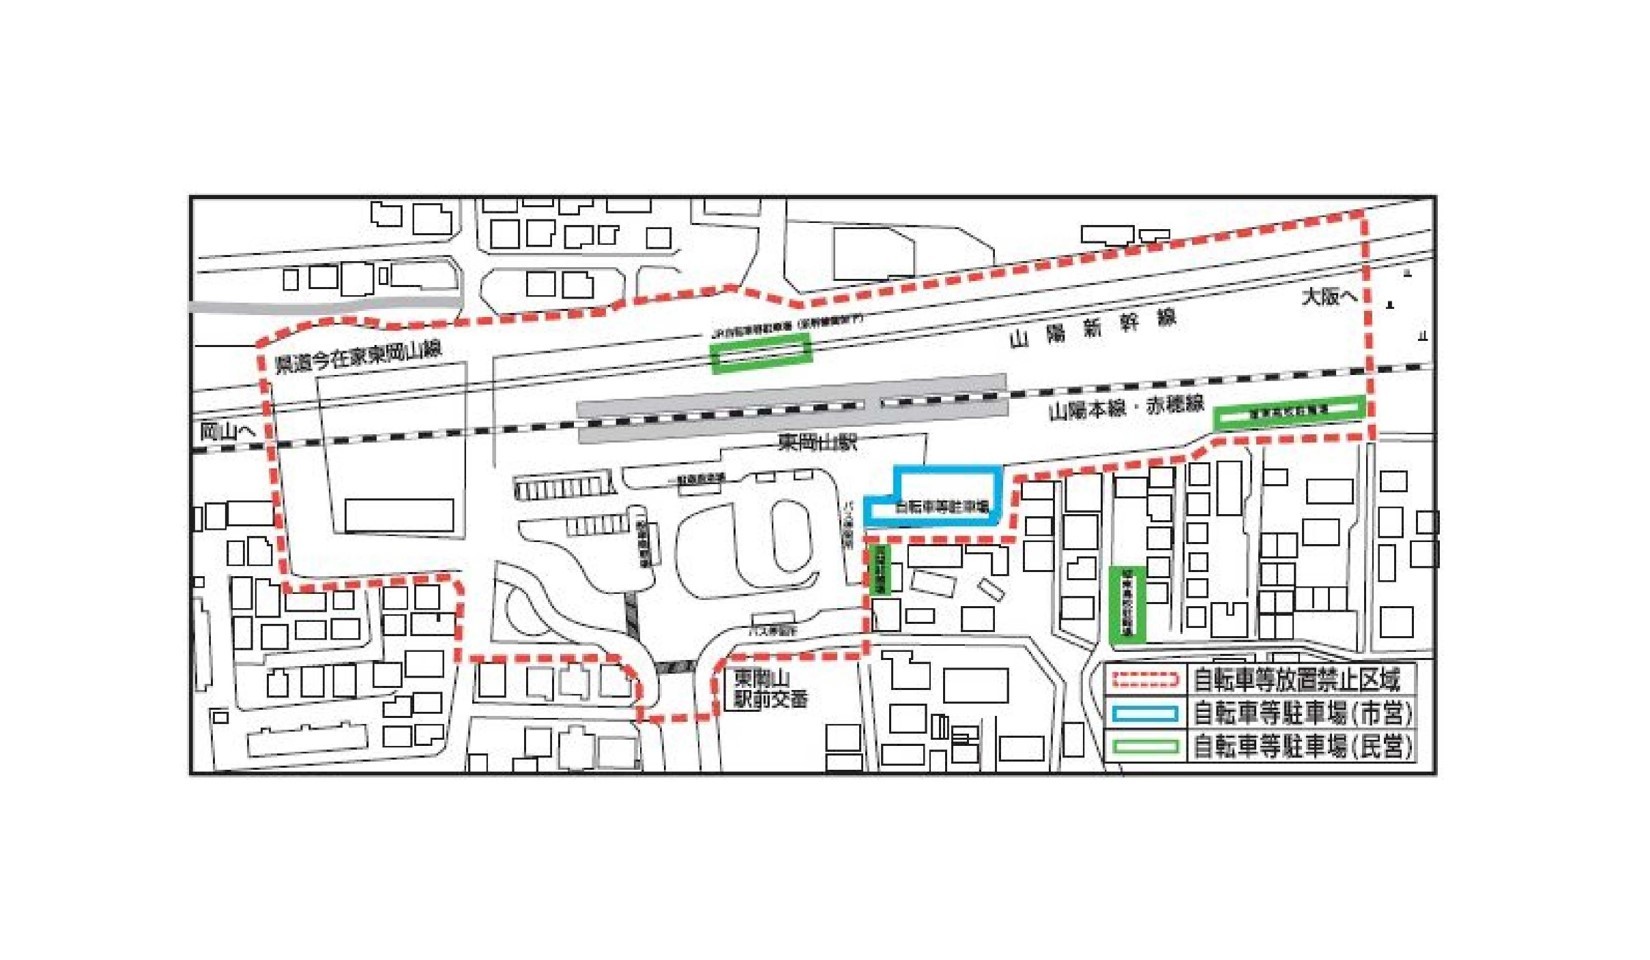 東岡山駅周辺の放置禁止区域並びに自転車等駐車場の位置図